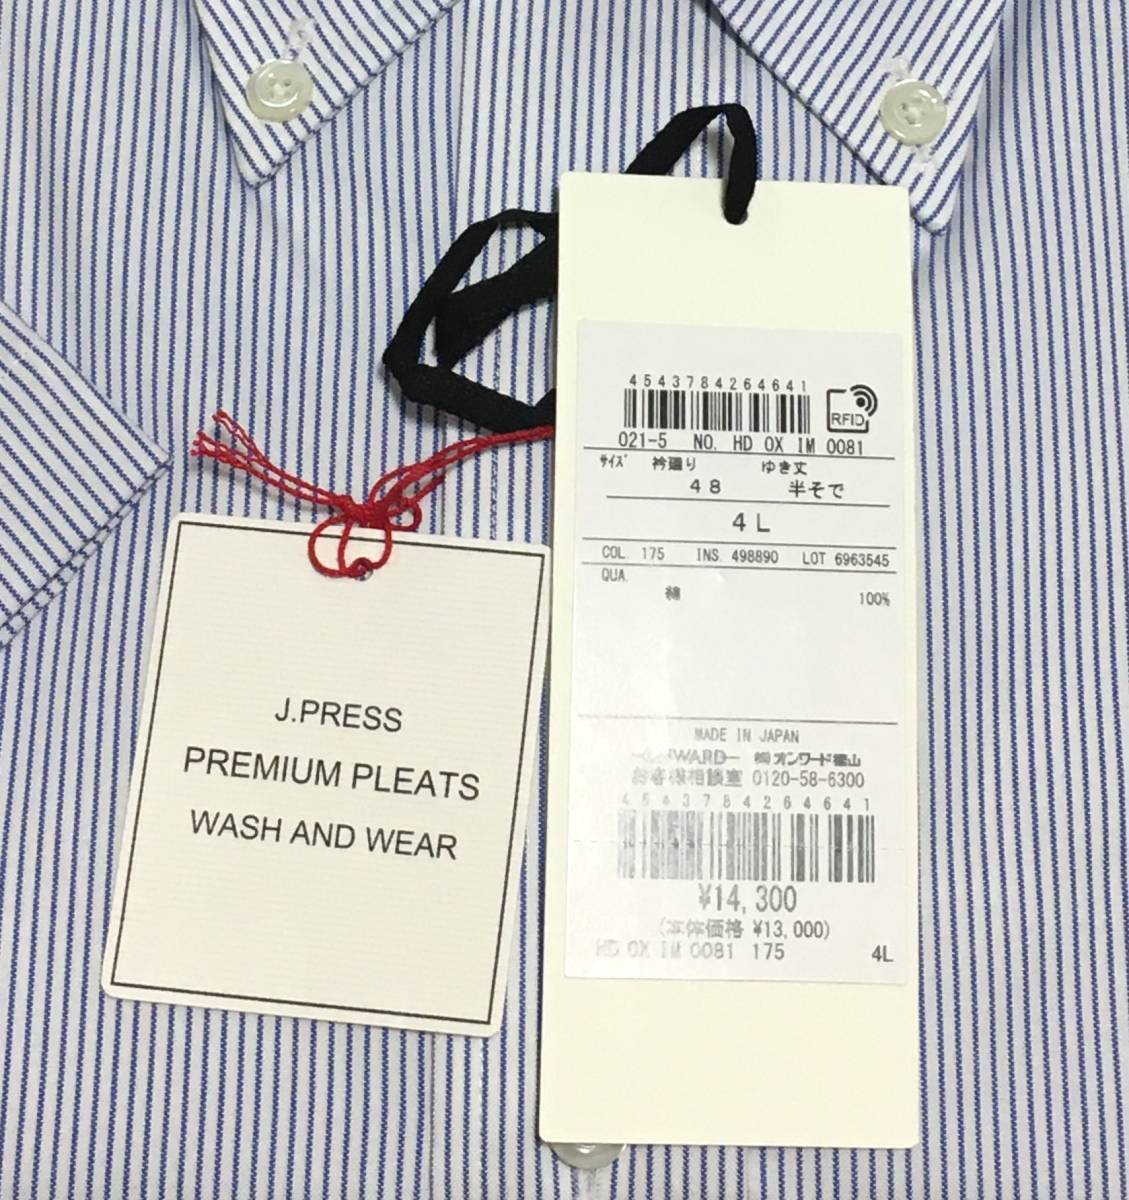 J.PRESS короткий рукав кнопка down рубашка хлопок 100 форма устойчивость PREMIUM PLEATS 4L голубой полоса J Press Onward обычная цена 14.300 иен 